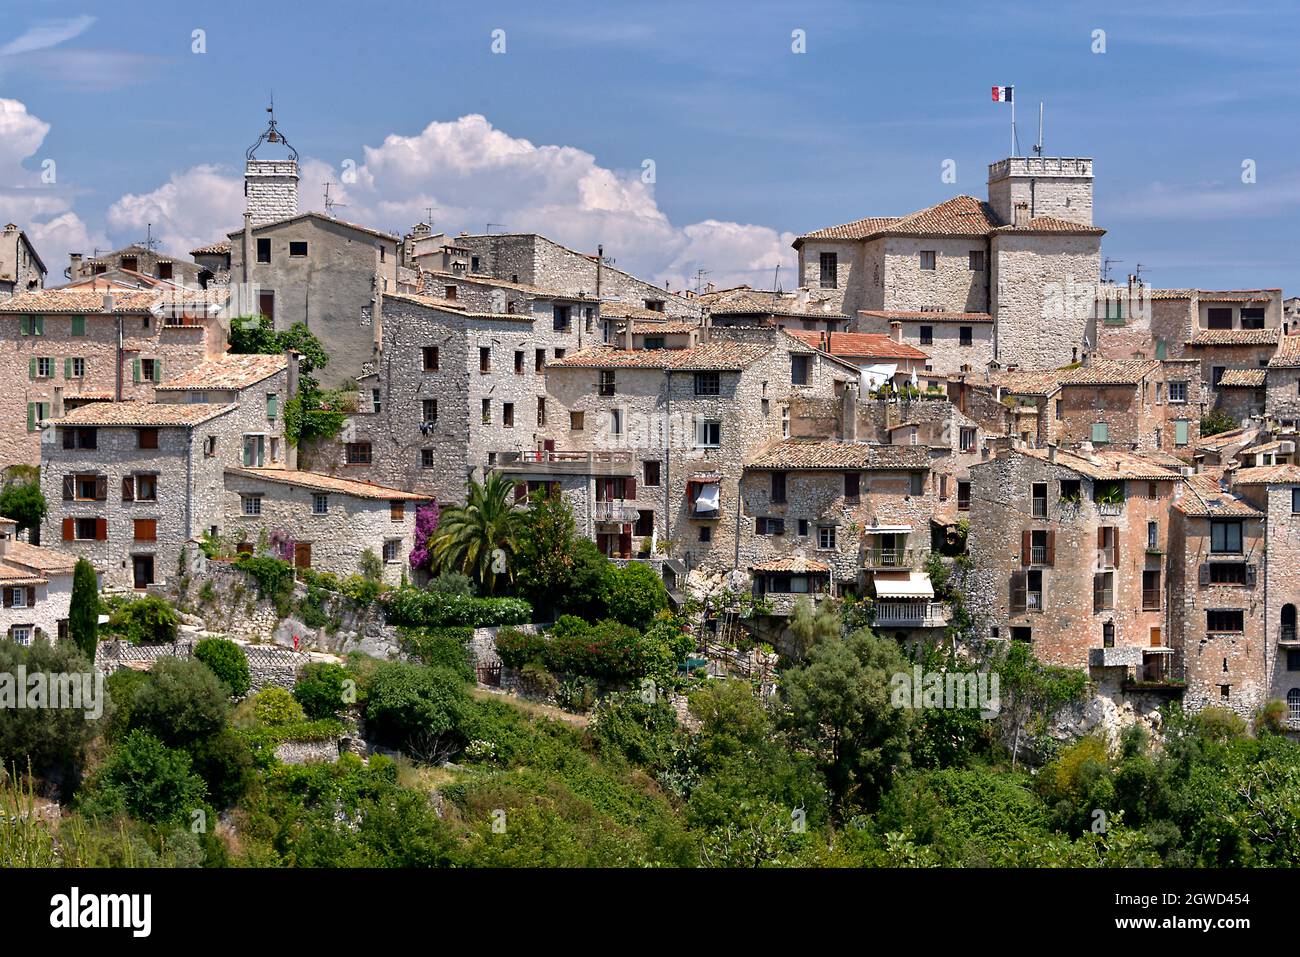 Dorf von Tourrettes-Sur-Loup, eine Gemeinde im Département Alpes-Maritimes im Südosten Frankreichs Stockfoto